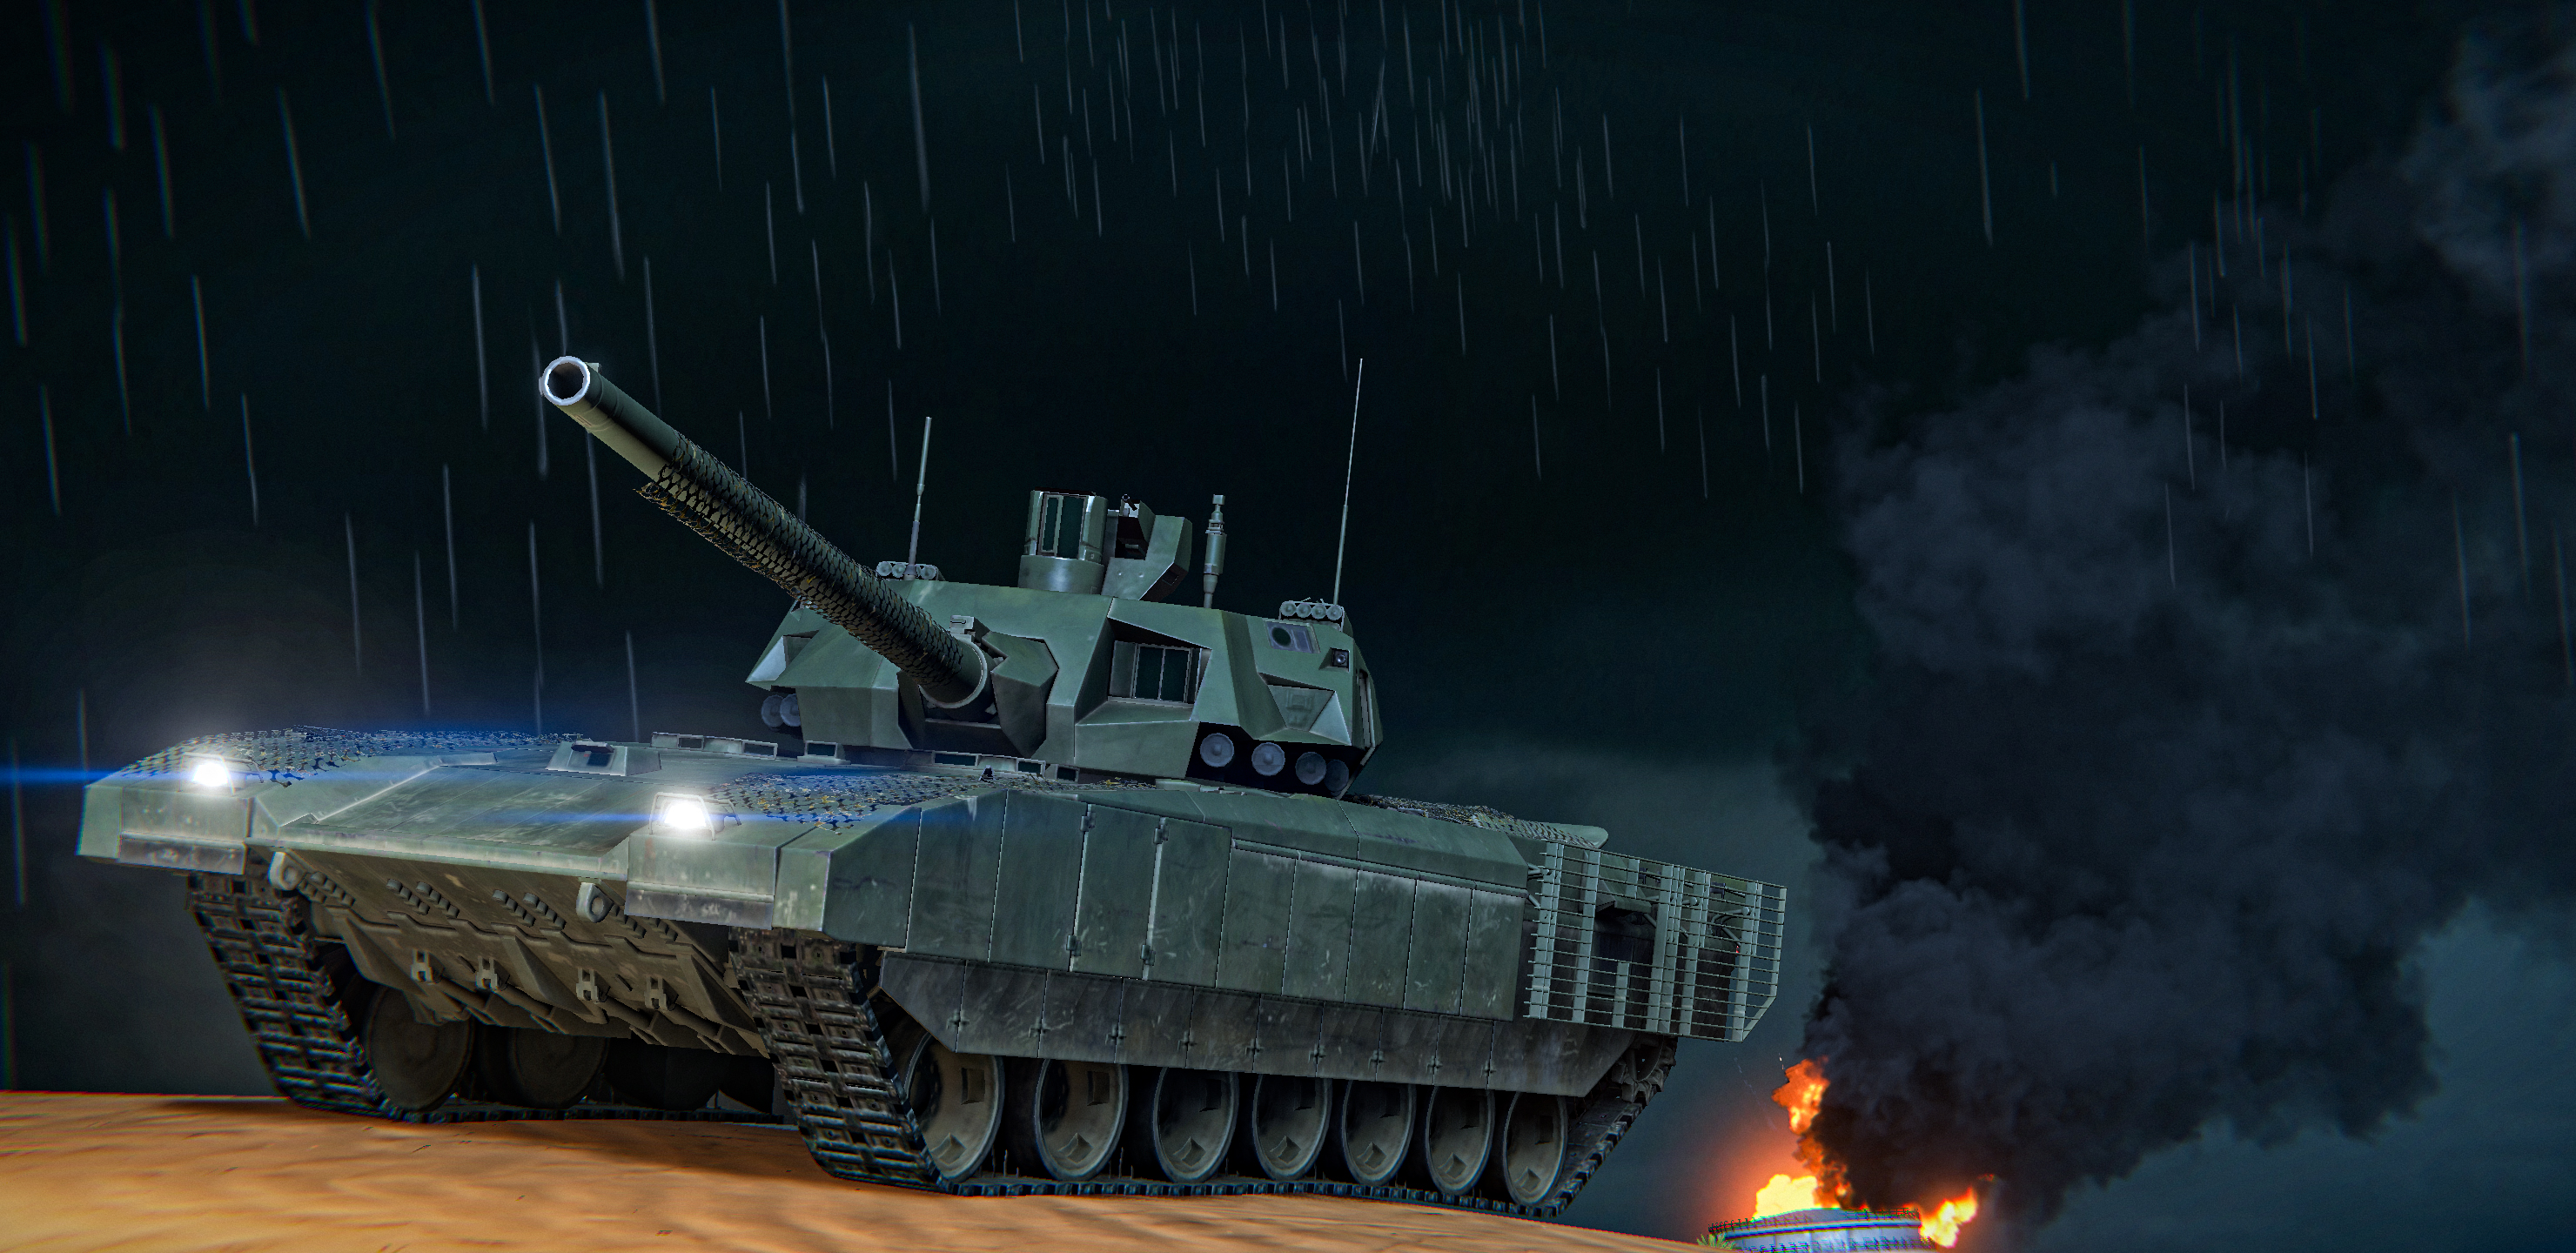 来自谢尔盖:

这是坦克模式夜战_图1